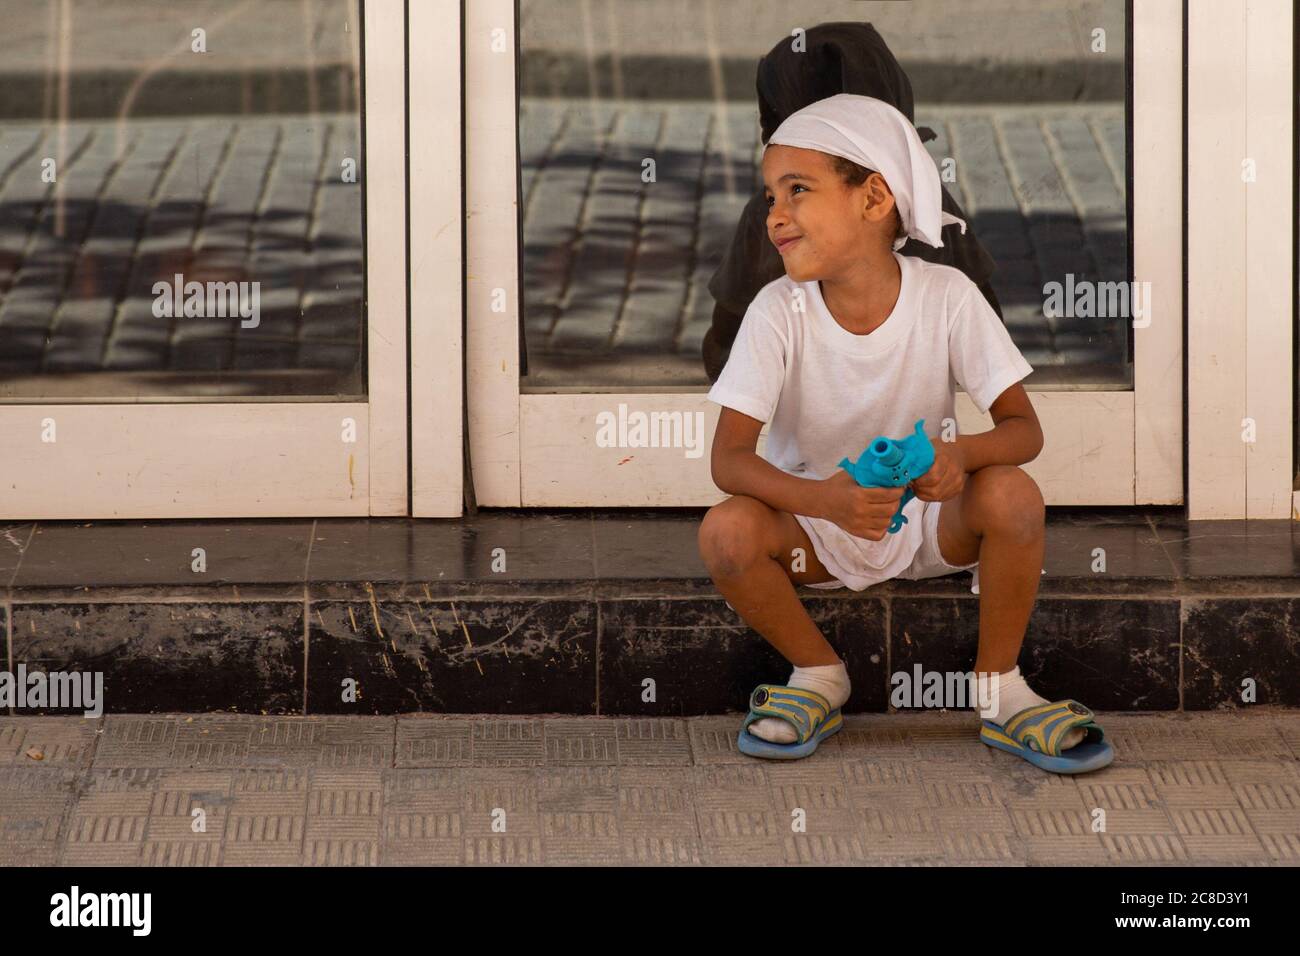 Havanna / Kuba - 04.15.2015: Süßes afro kubanisches Kind in weiß gekleidet, das auf der Straße sitzt, mit ihrem Spielzeug spielt und lächelt Stockfoto